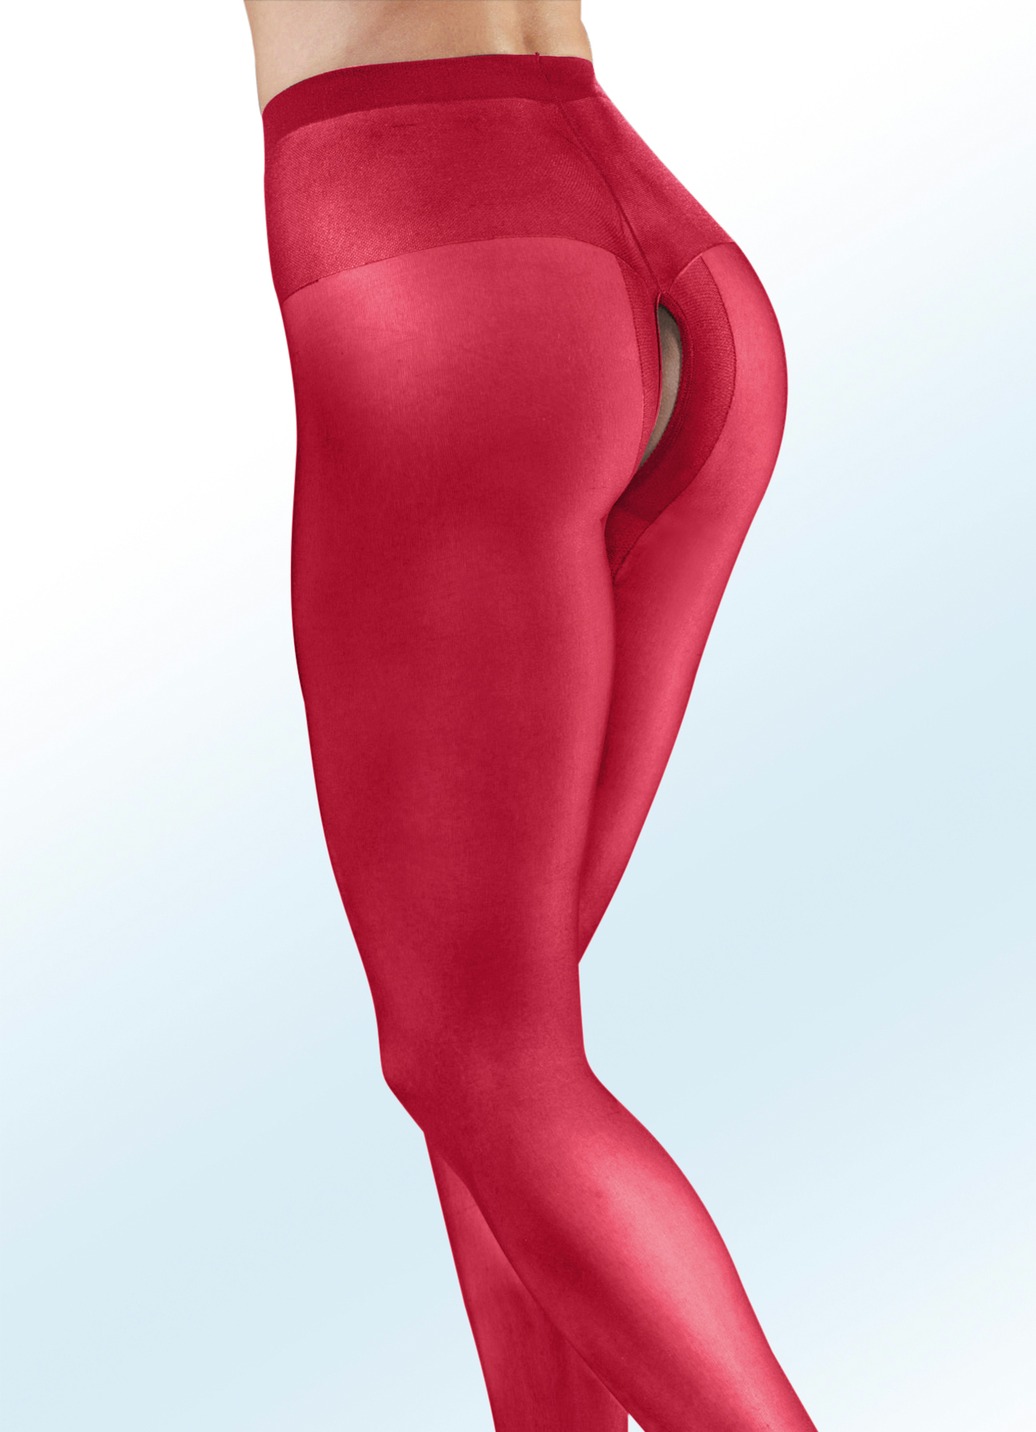 Sexy Dreierpack Strumpfhosen mit offenem Schritt, Größe 4 (44/46), Rot von BADER